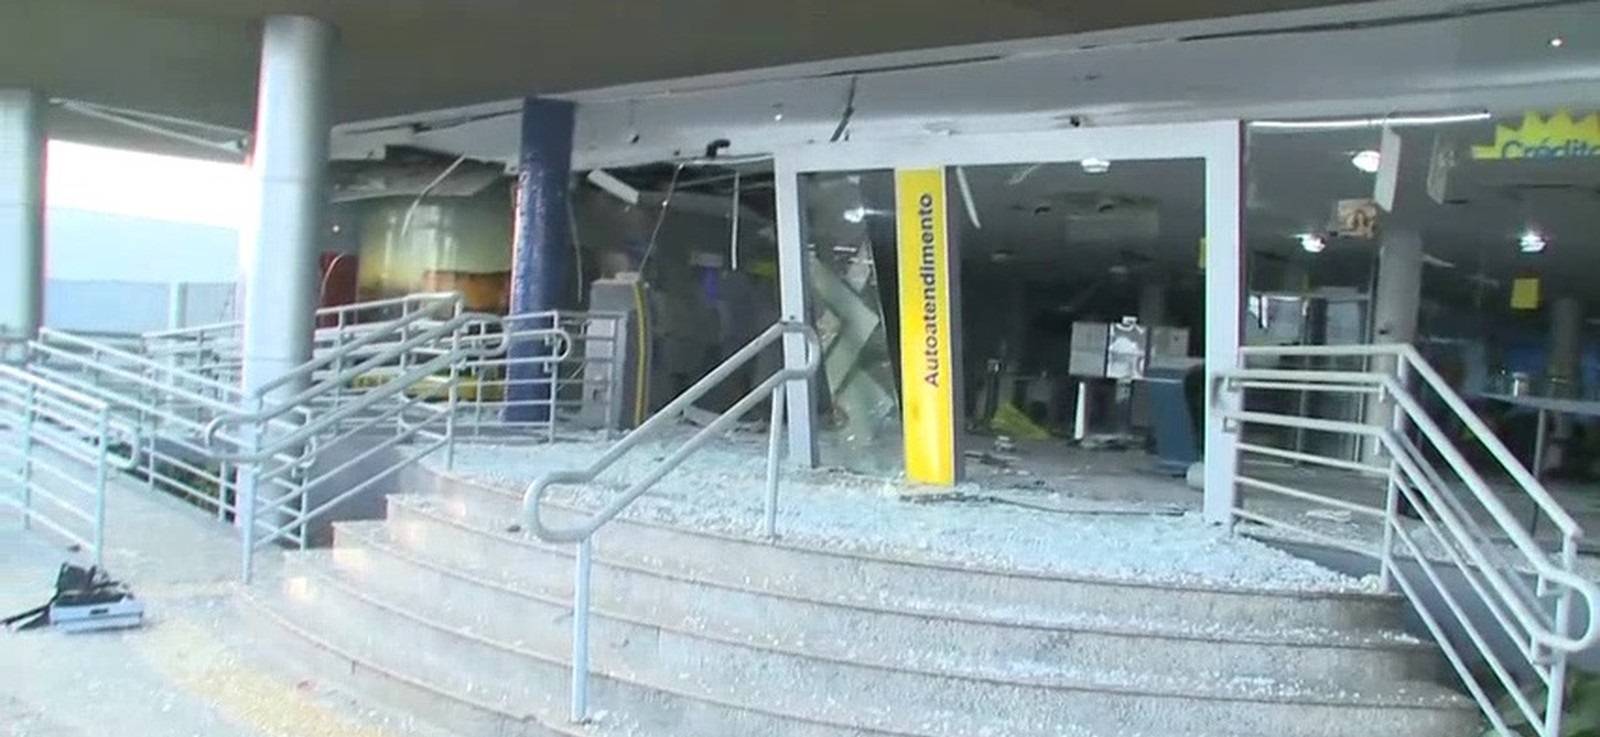 Agência do Banco do Brasil em São Luís é atacada